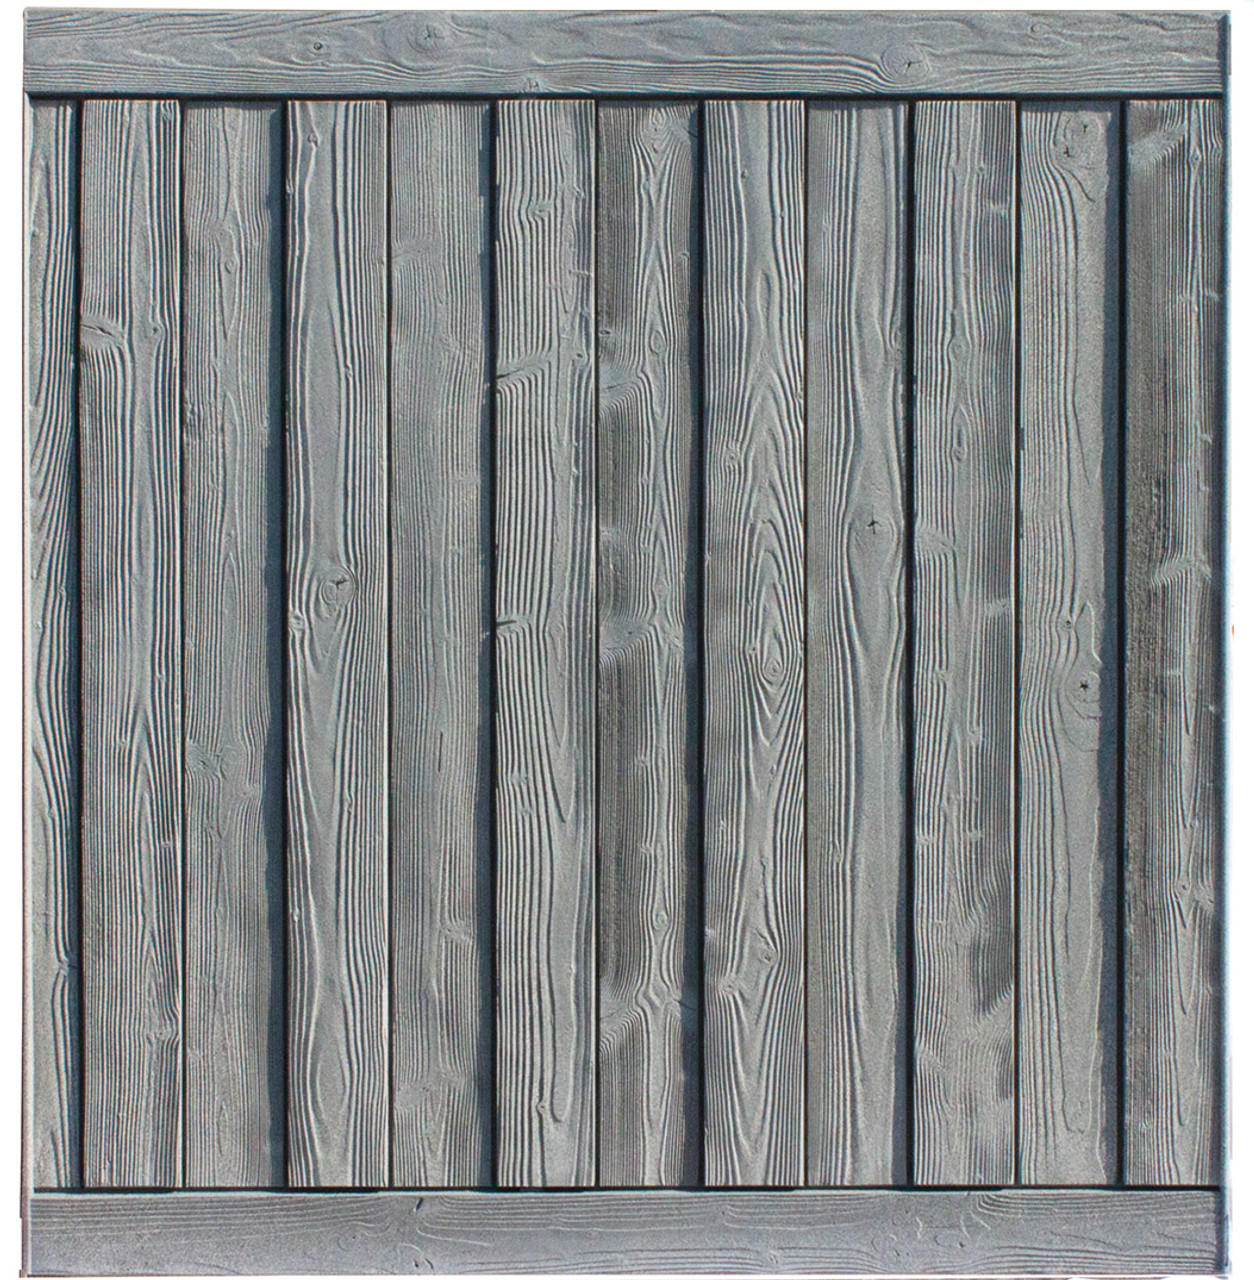 Bufftech Sherwood Fence Panel in Nantucket Gray